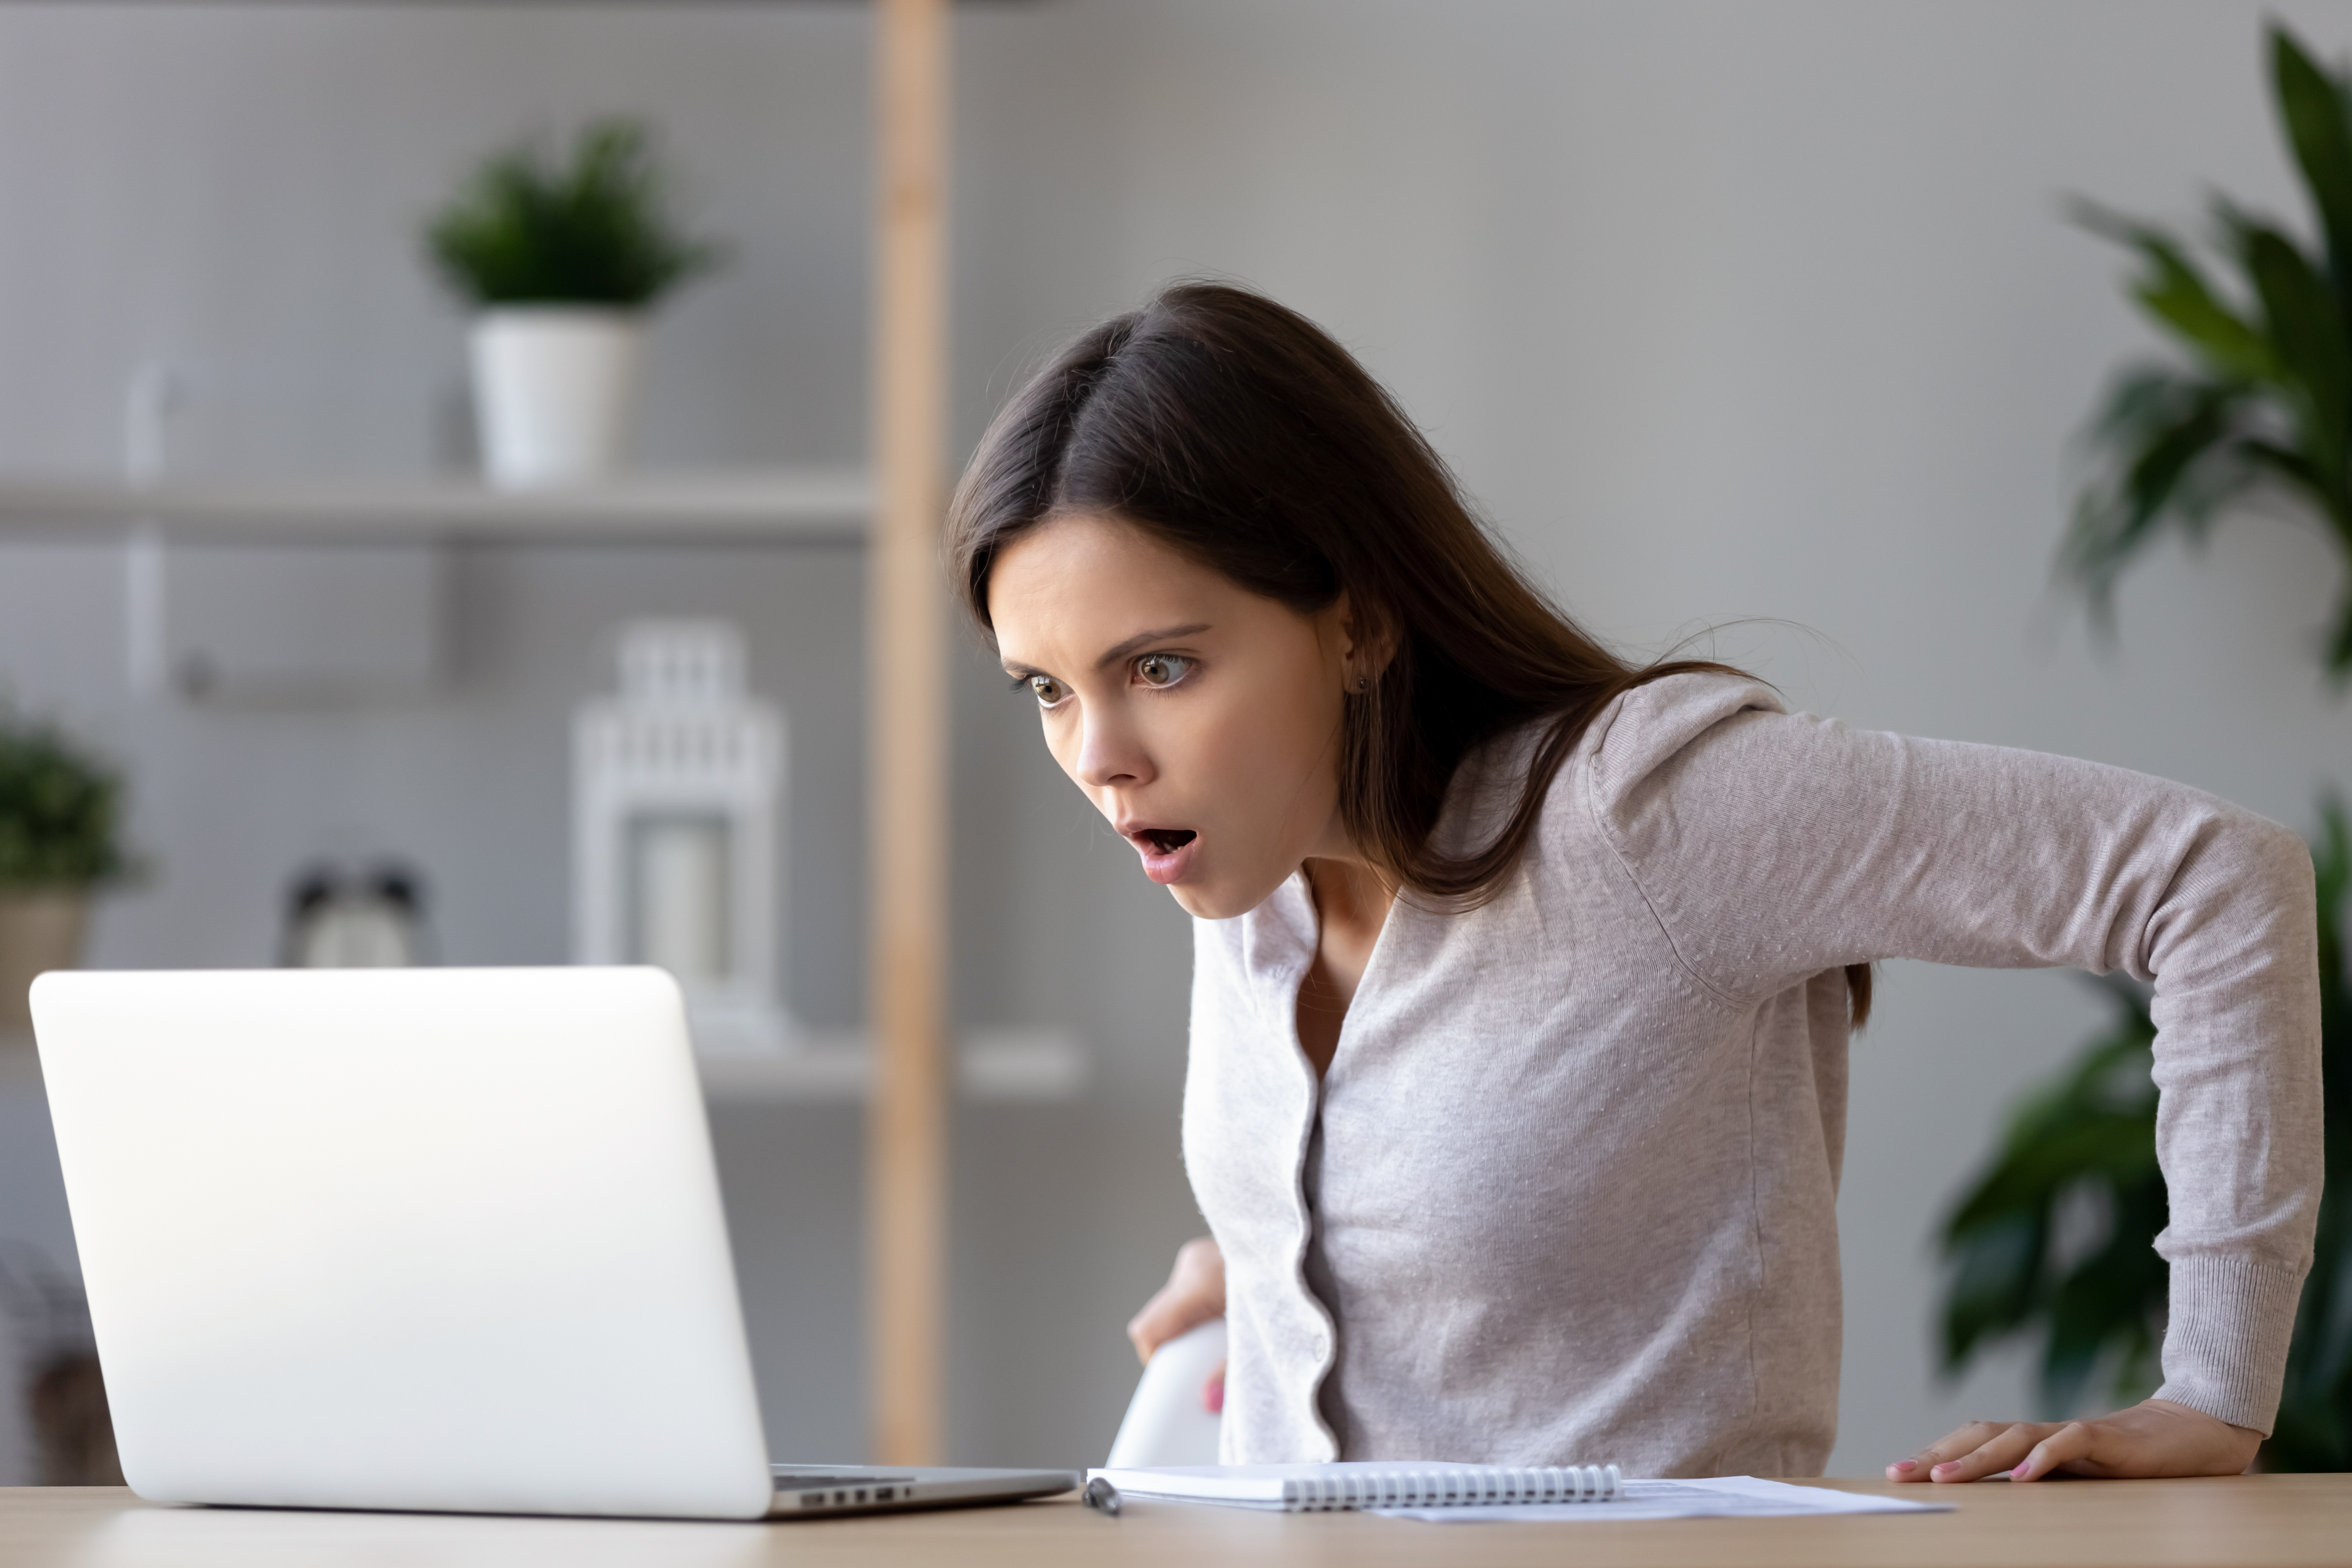 Eine junge Frau schaut schockiert auf das, was sie in einem Laptop sieht | Quelle: Shutterstock